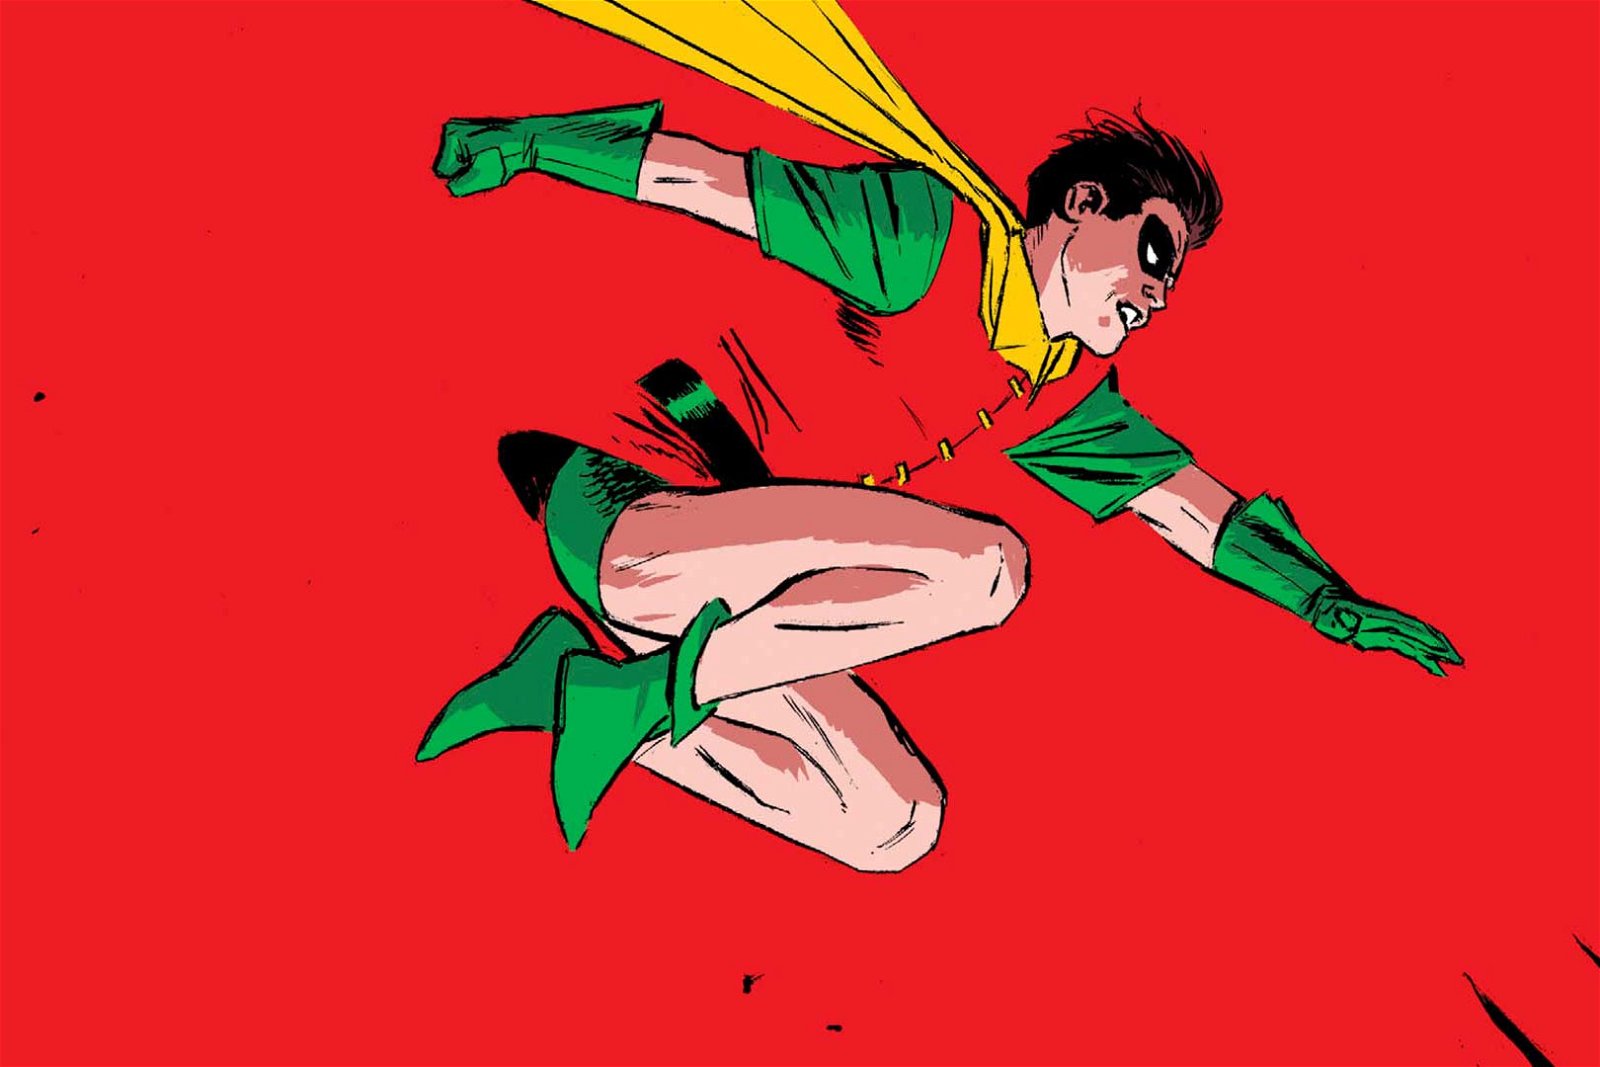 Robin 101: One Name, Many Heroes